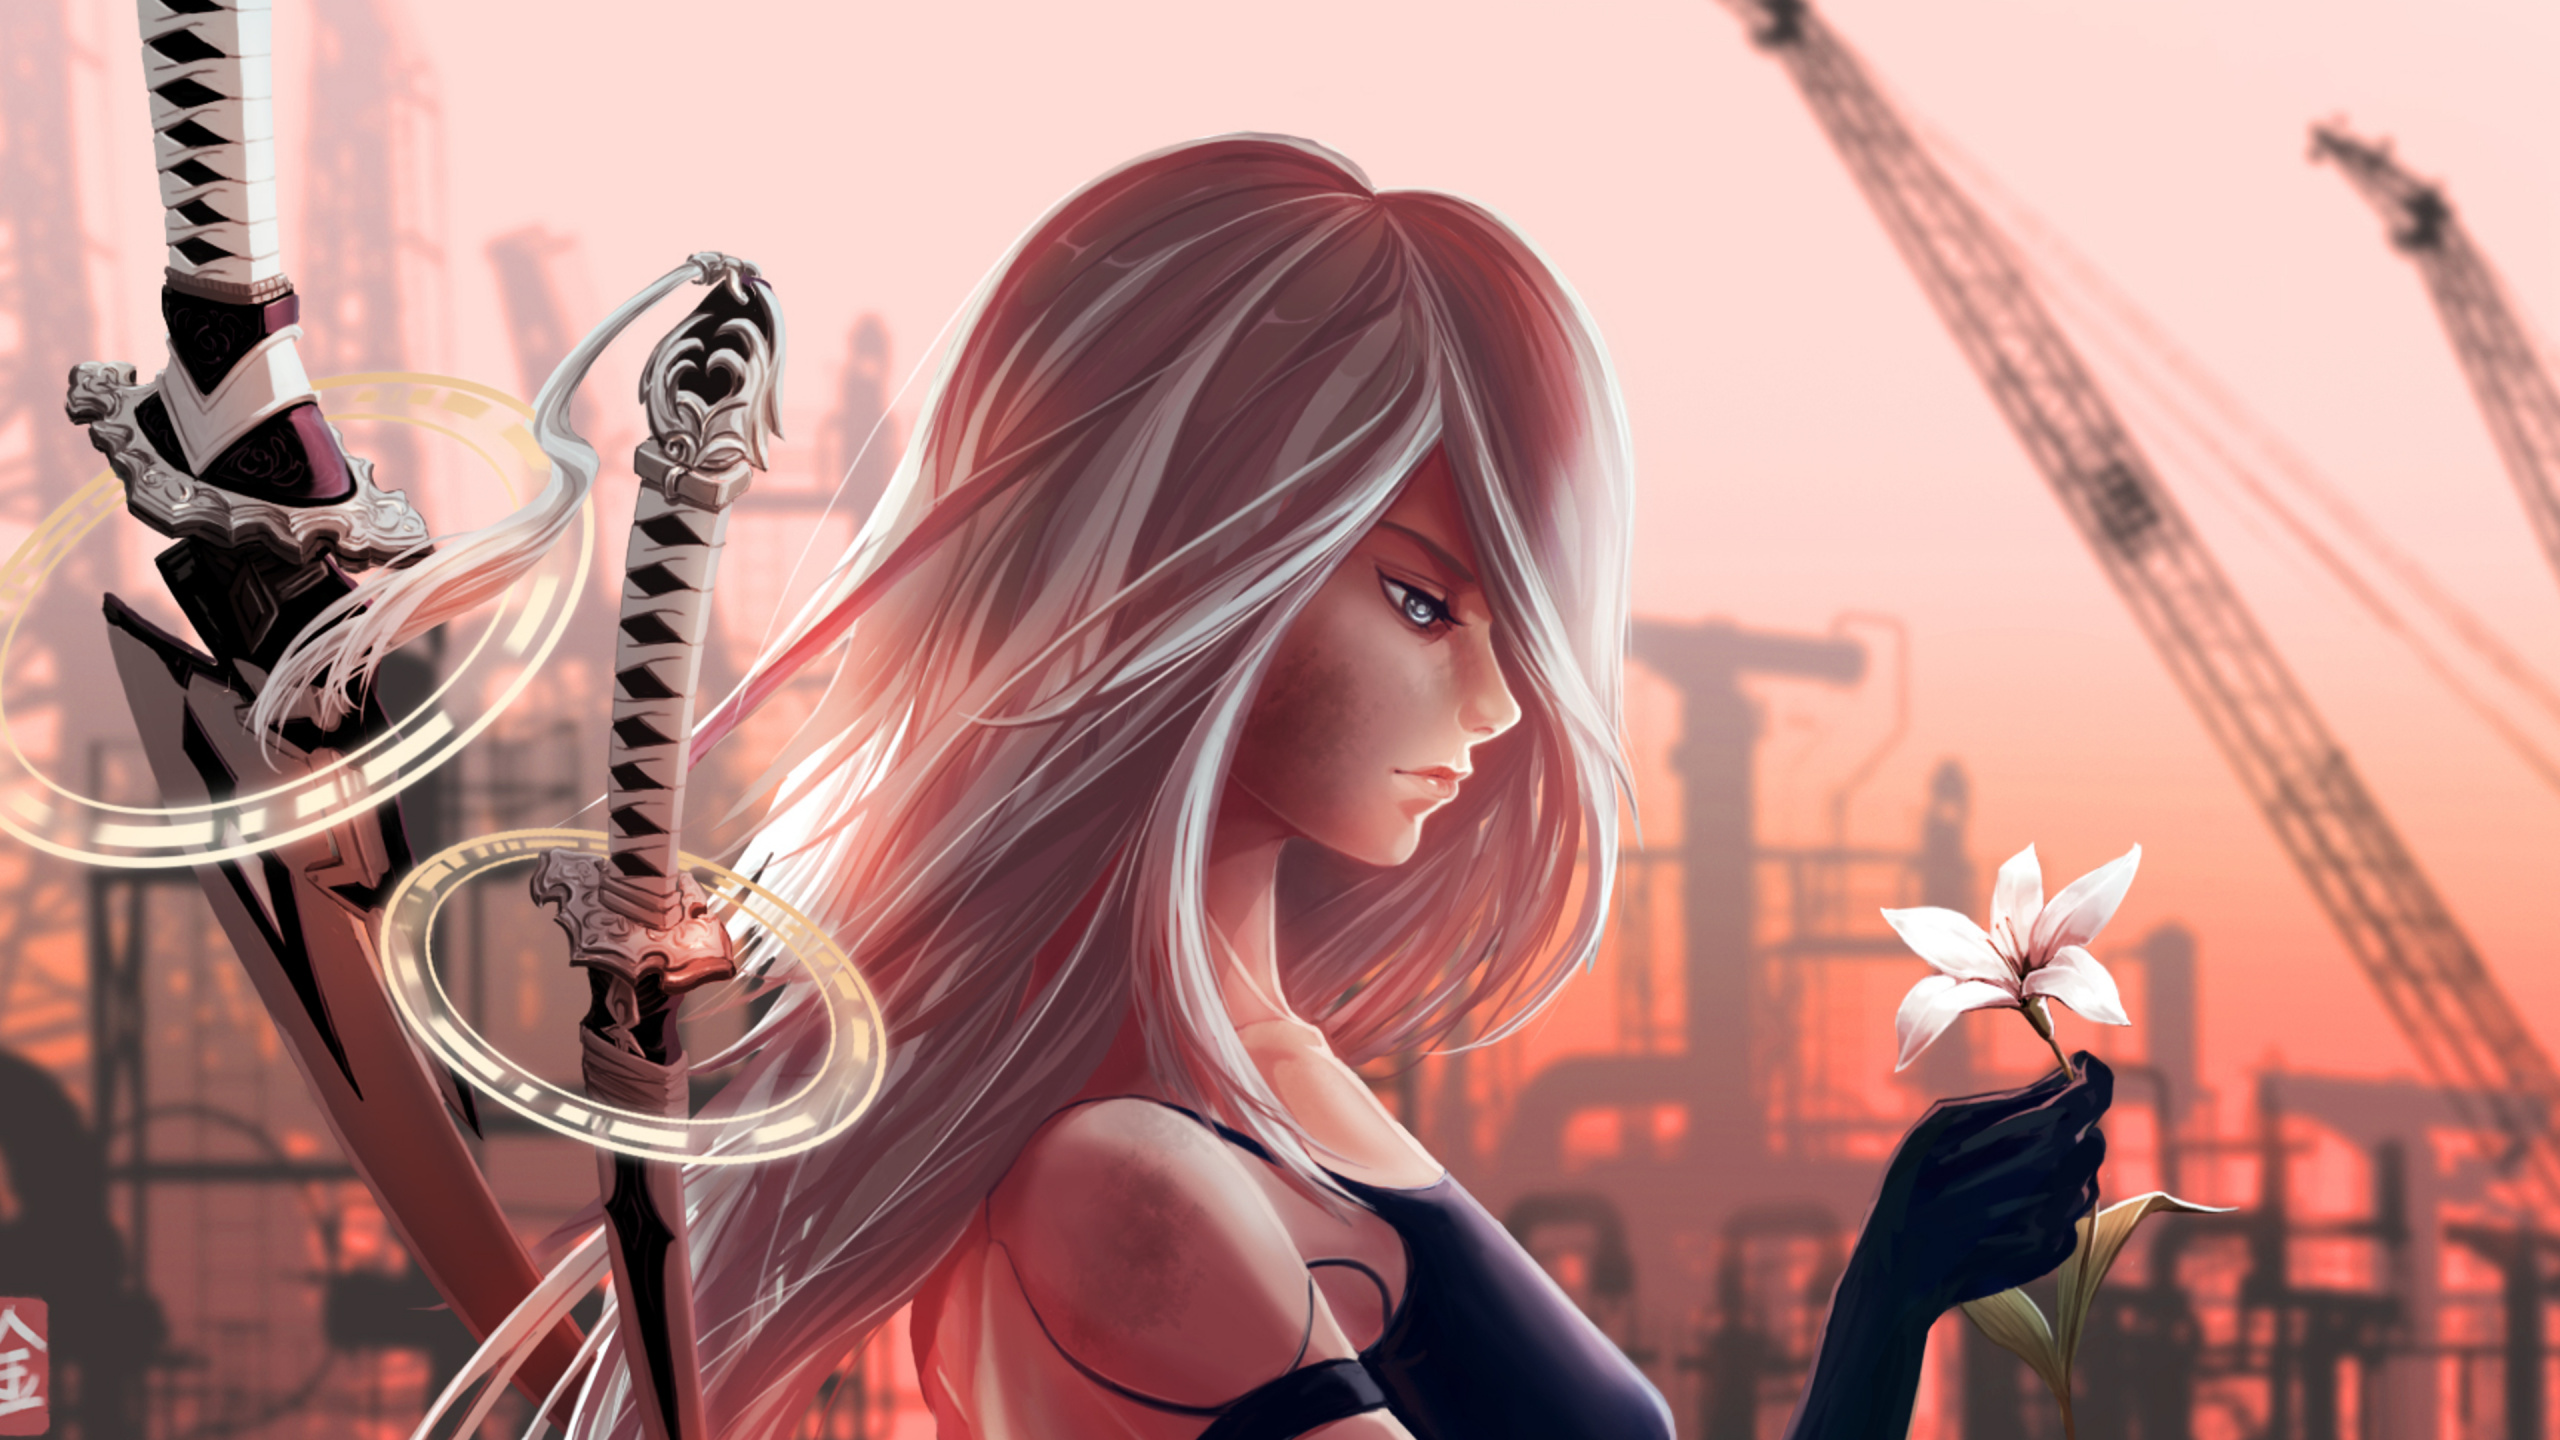 Femme en Soutien-gorge Noir Personnage Anime. Wallpaper in 2560x1440 Resolution